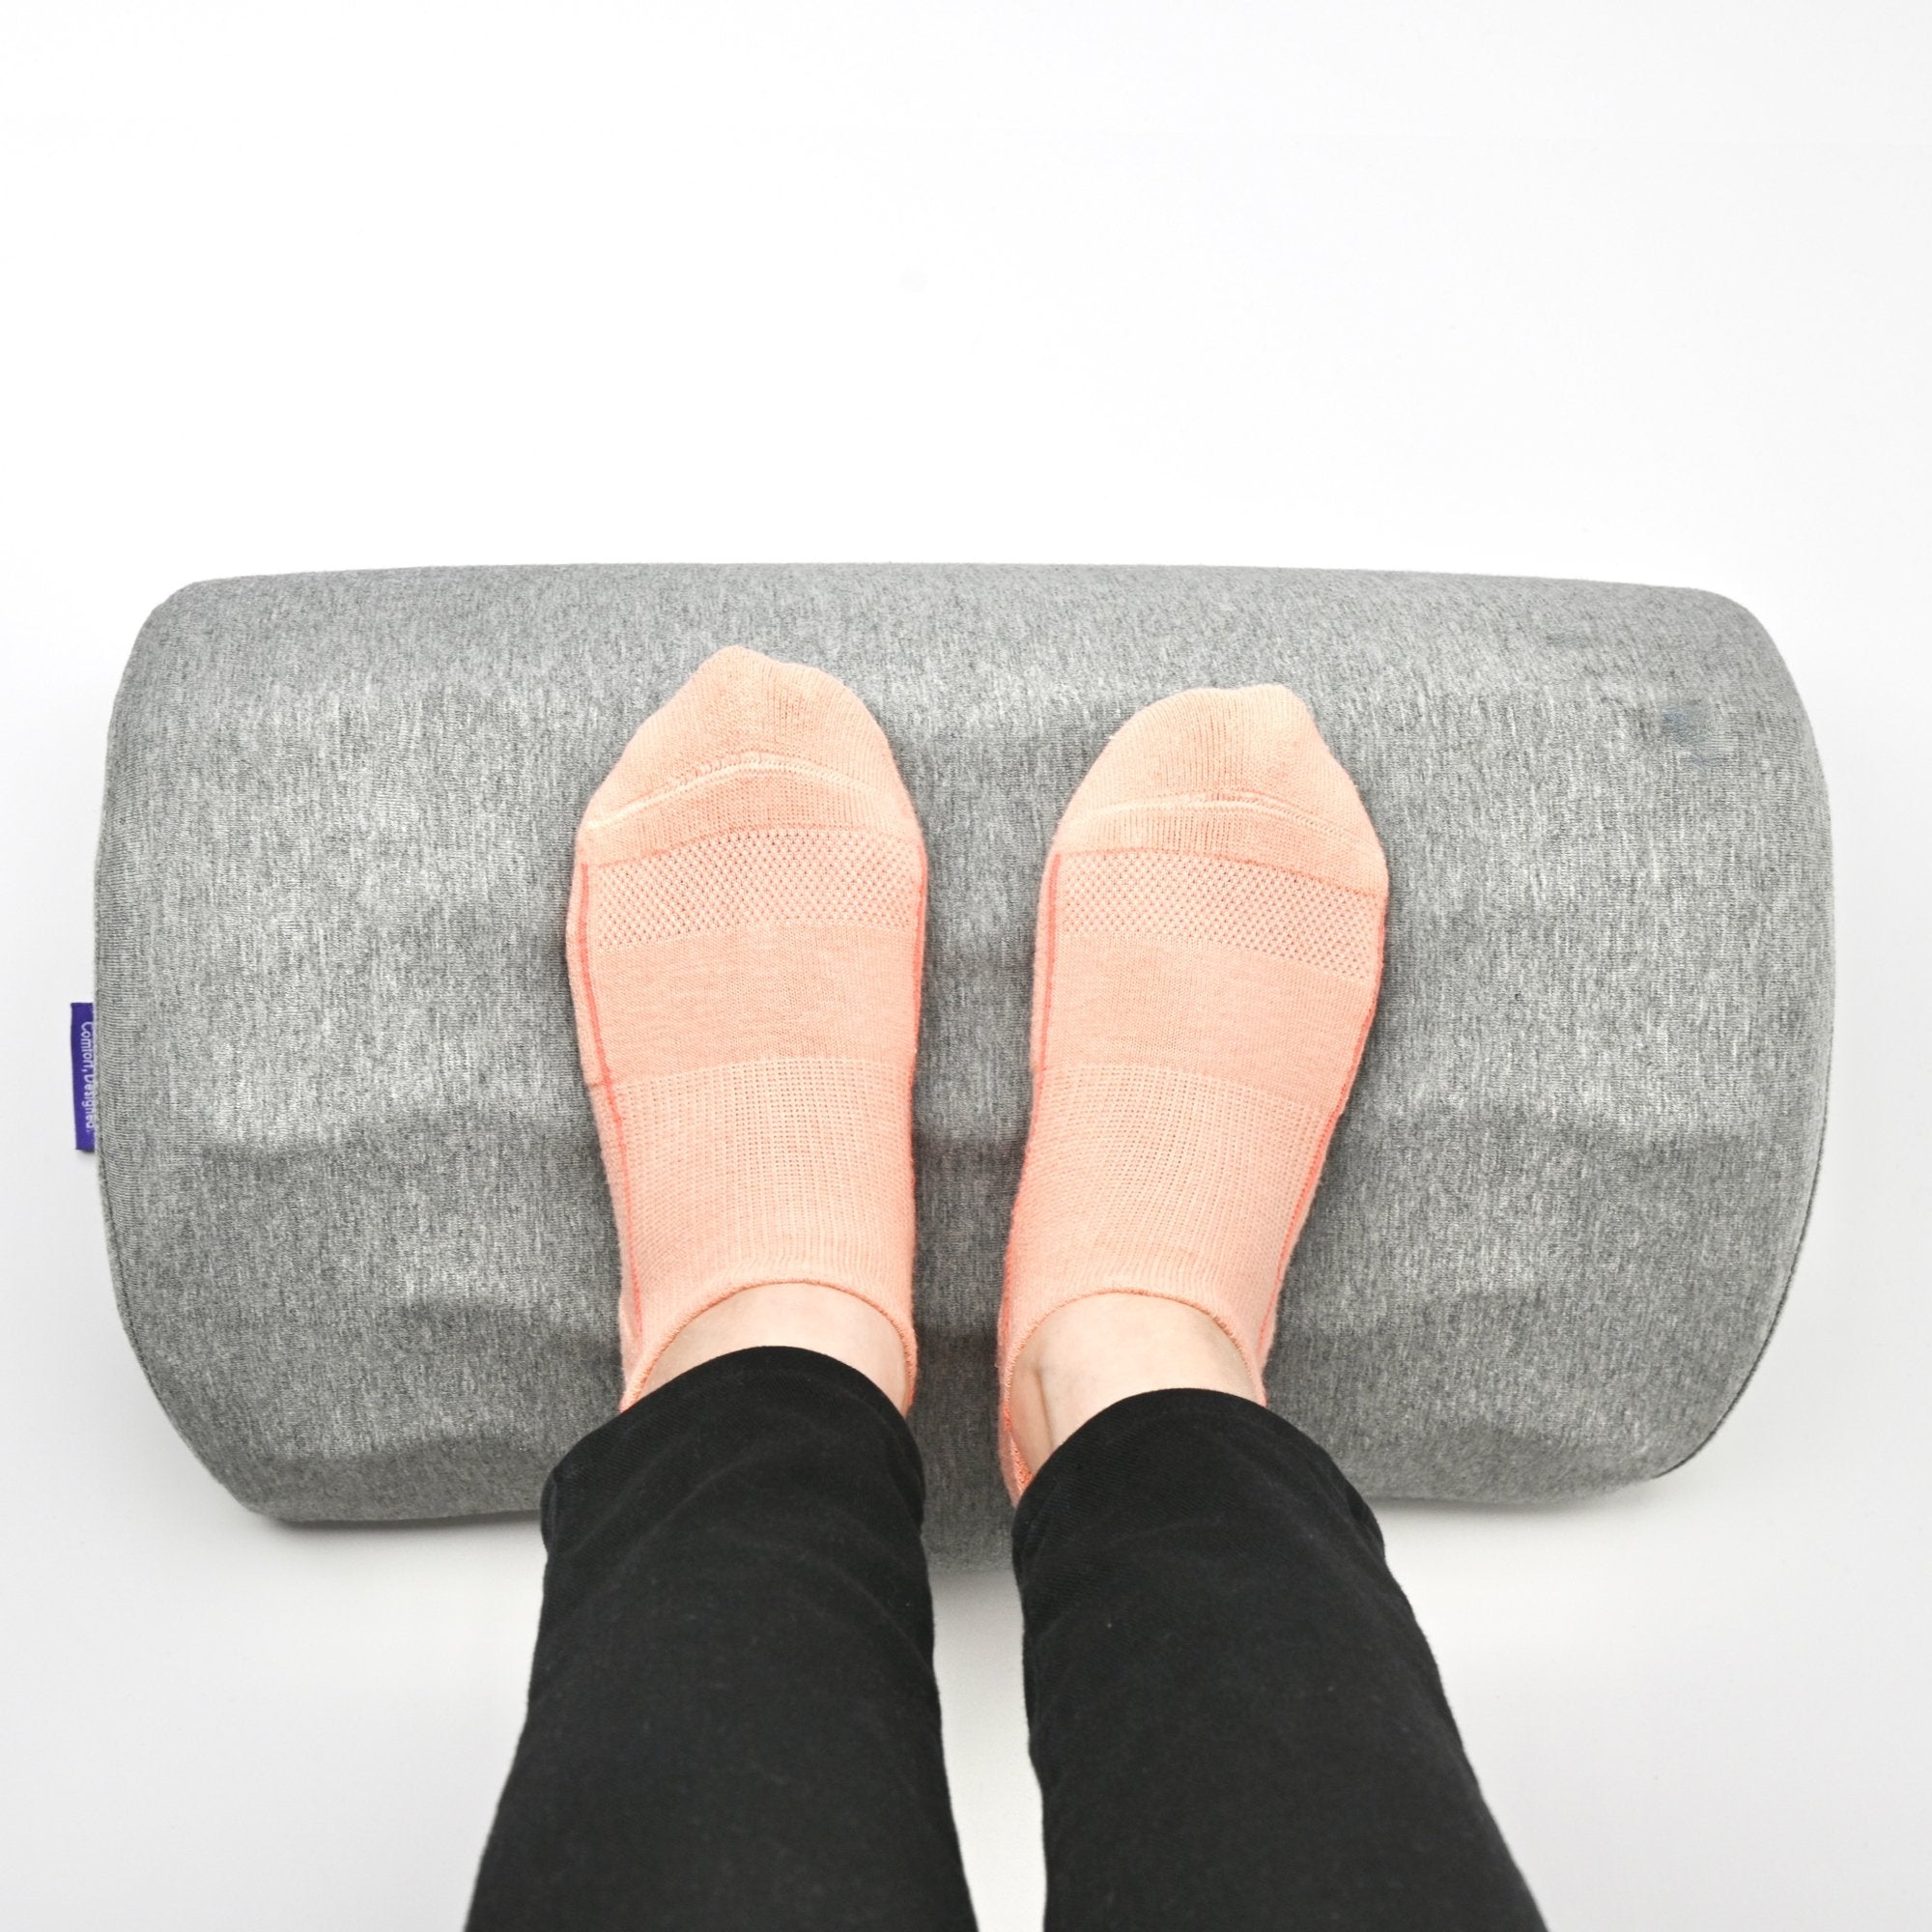 Ergonomic Foot Cushion